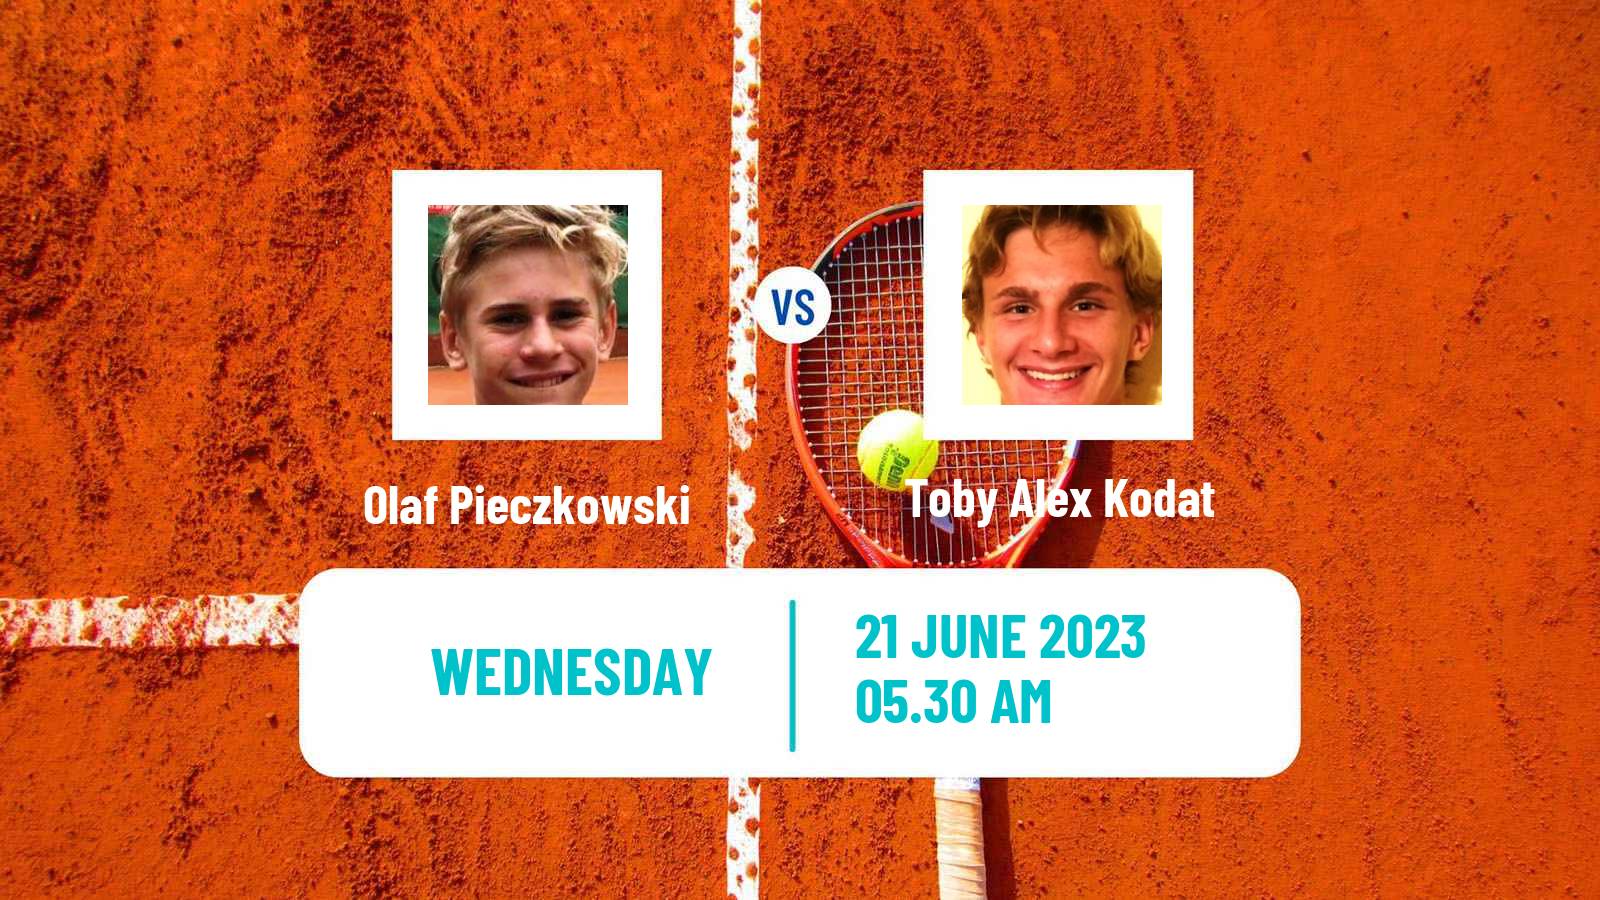 Tennis ITF M25 Poprad Men Olaf Pieczkowski - Toby Alex Kodat